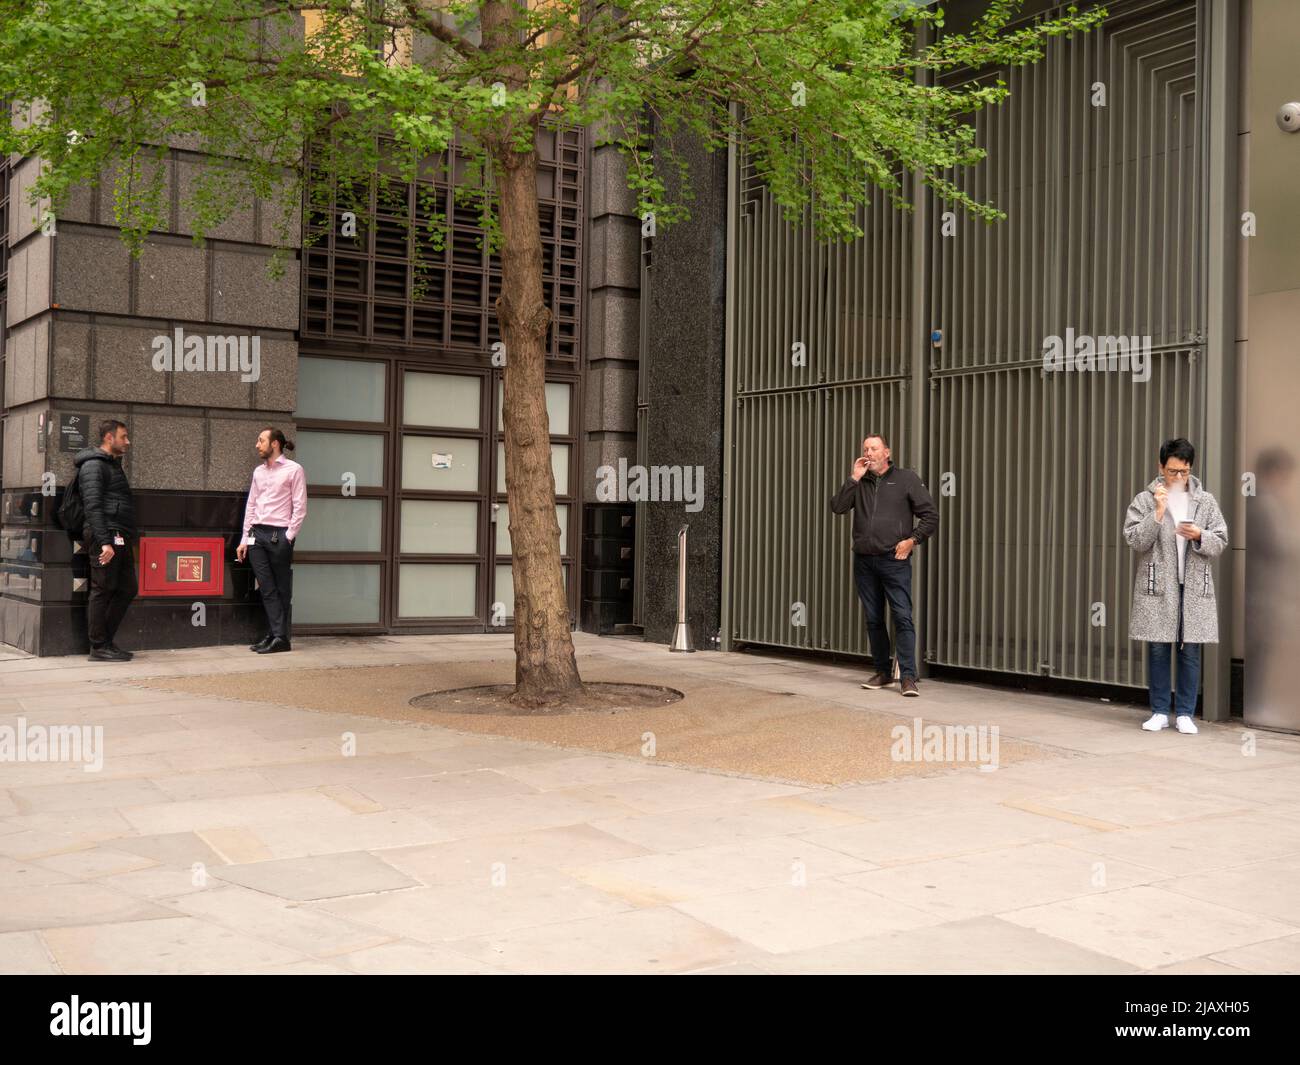 Gruppe von Rauchern, die während der Pause vor dem Büro in Central London Zigaretten rauchen Stockfoto